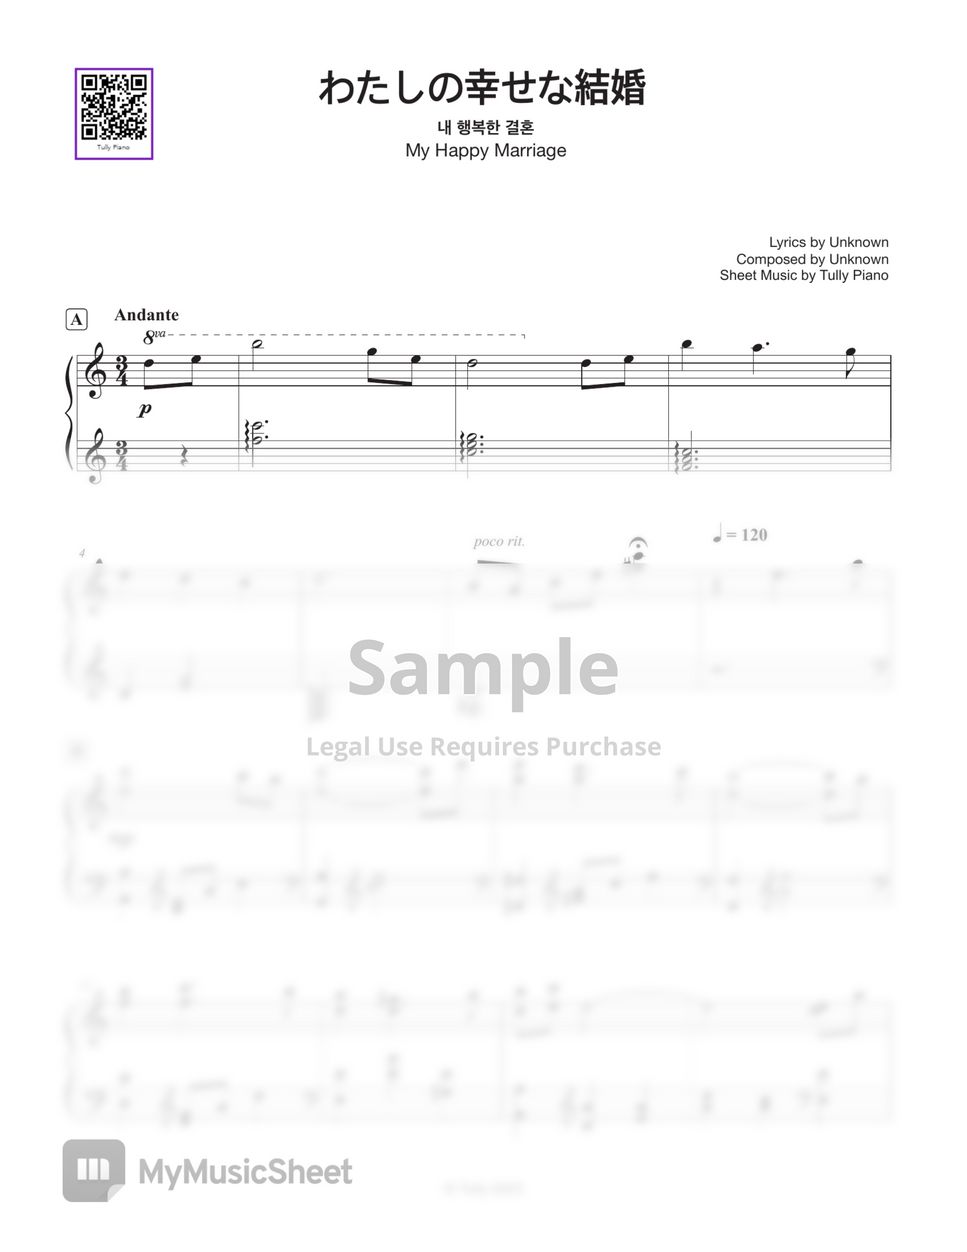 わたしの幸せな結婚 - My Happy Marriage 『わたしの幸せな結婚』 OST (Including Easy ver.) by Tully Piano